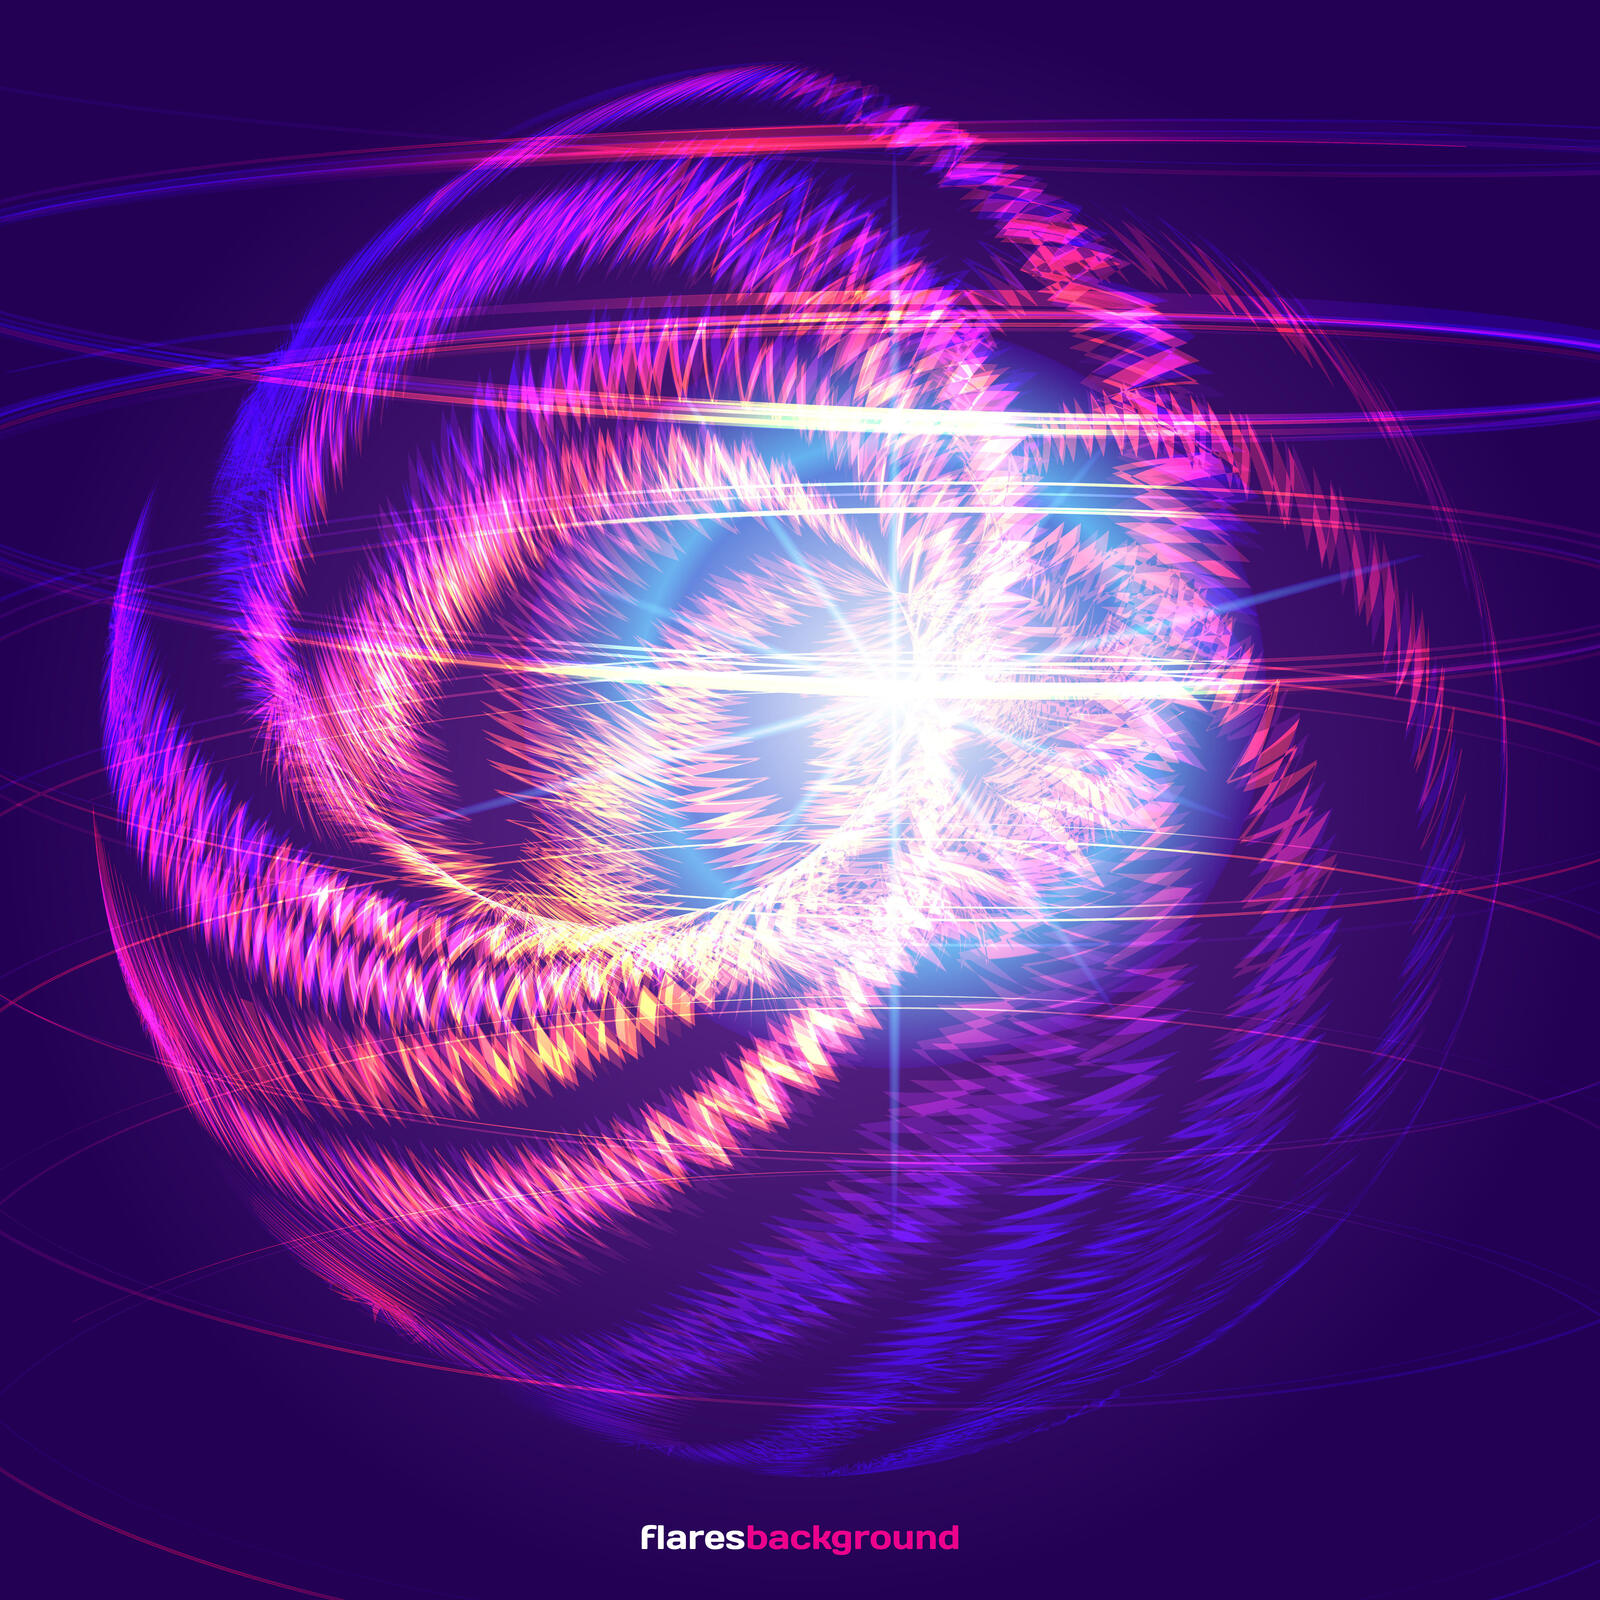 Бесплатное фото Flares background sphere